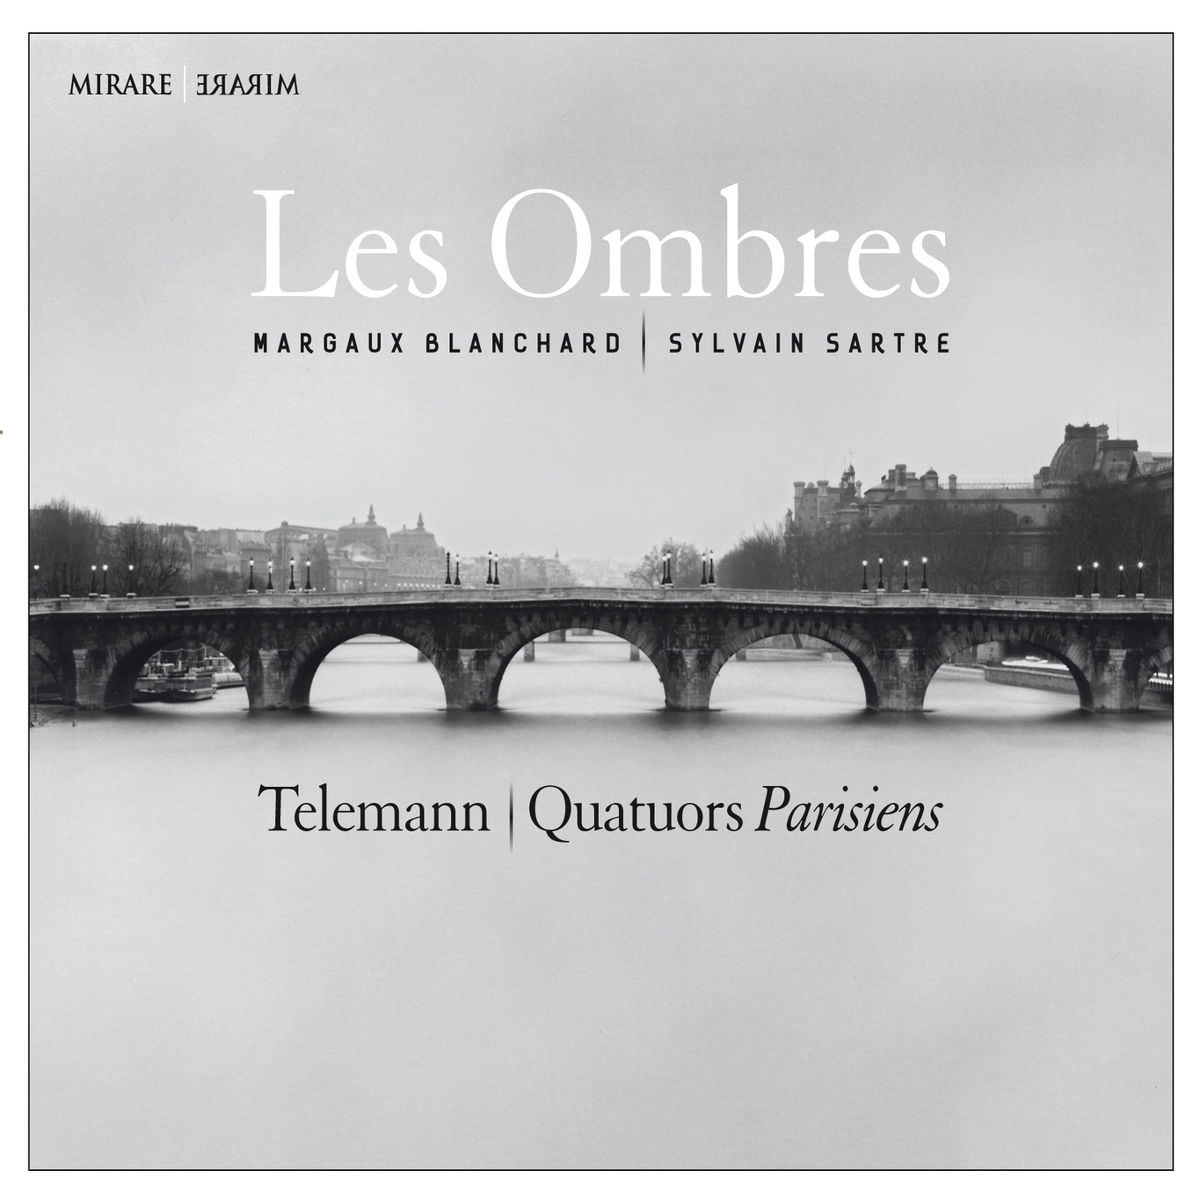 Les Ombres, Margaux Blanchard & Sylvain Sartre - Telemann: Quatuors Parisiens (2014) [FLAC 24bit/88,2kHz]